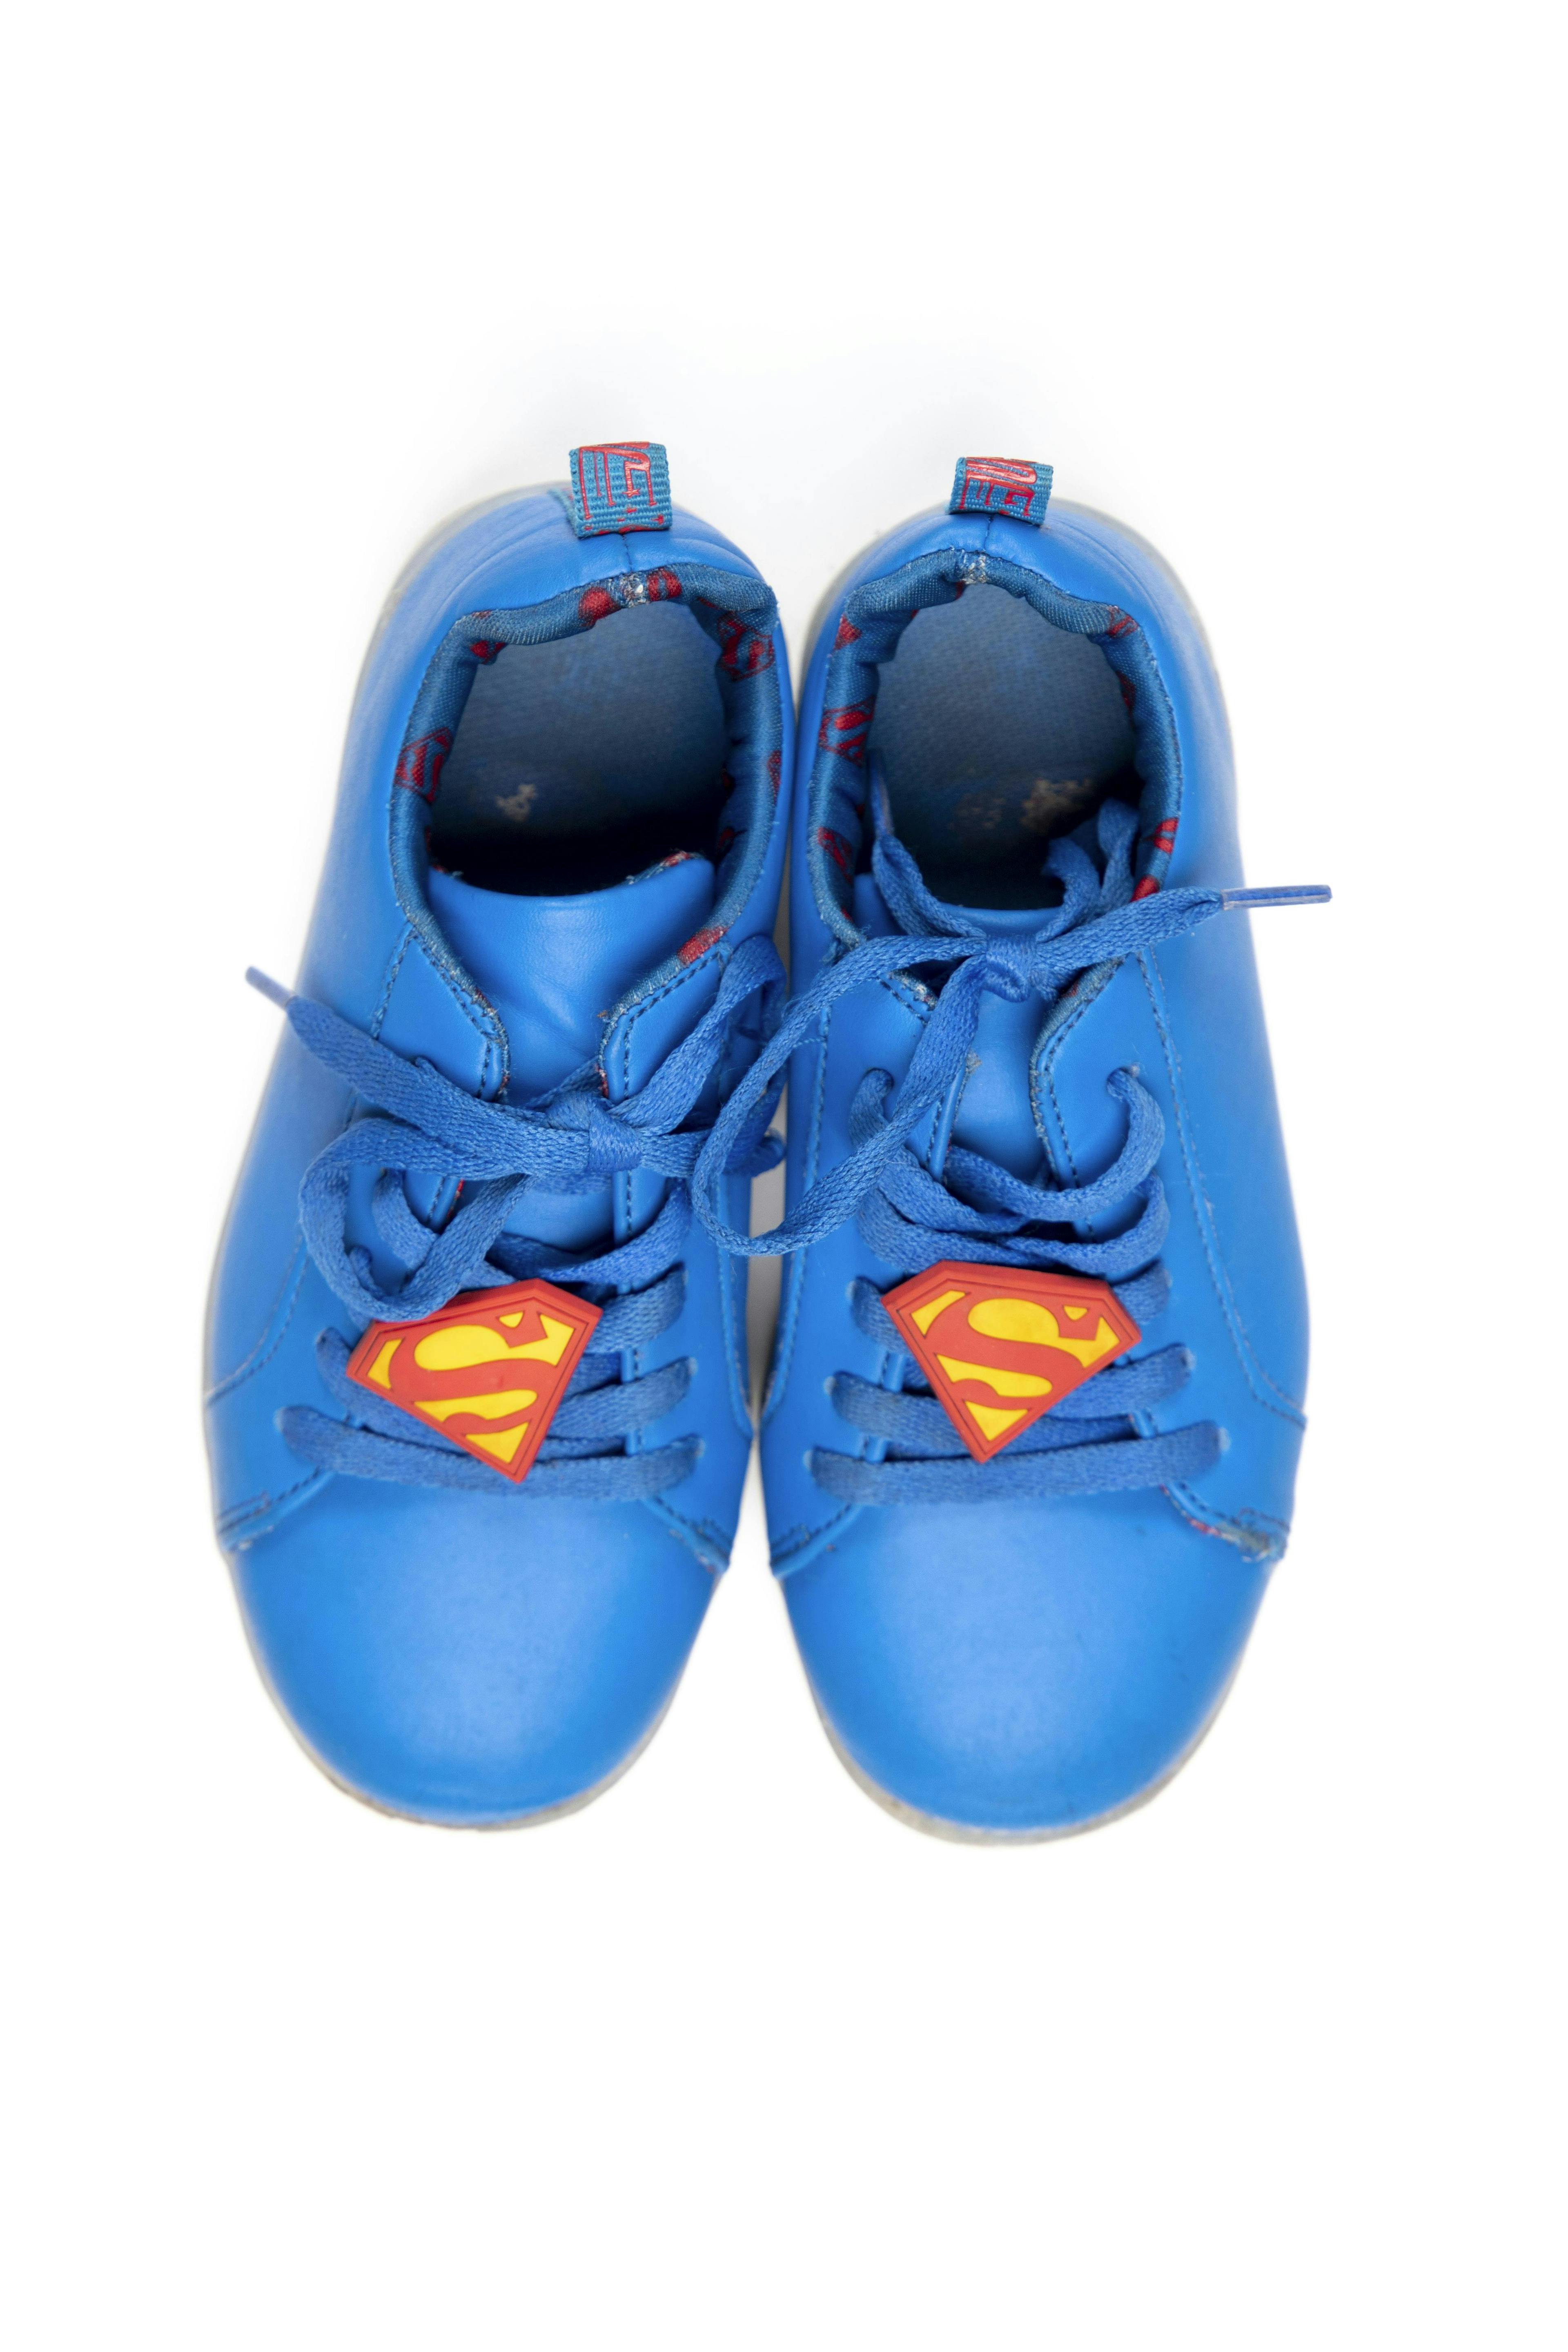 zapatillas superman con luz - liga de la justicia